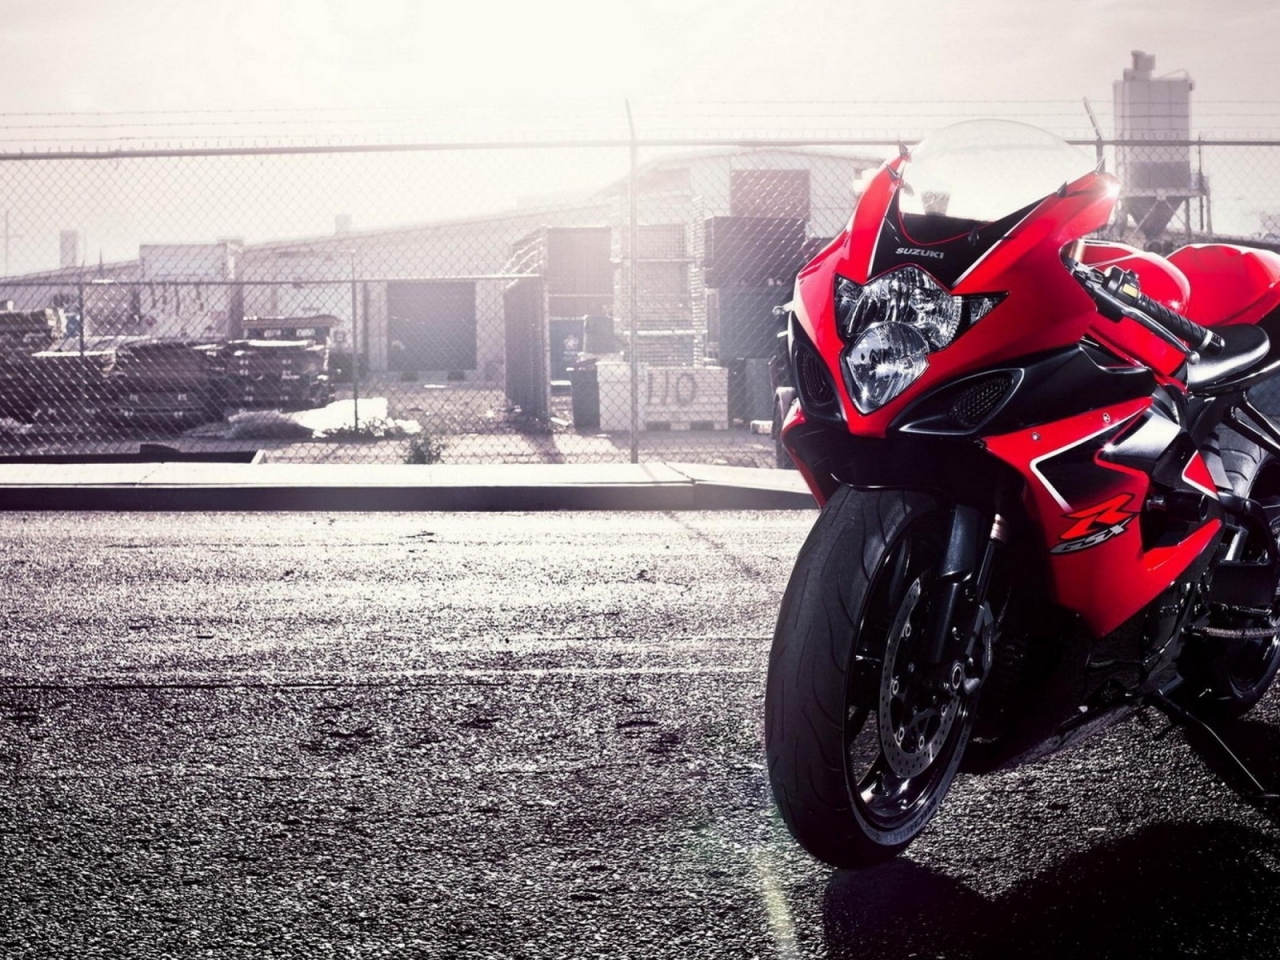 Suzuki Red for 1280 x 960 resolution